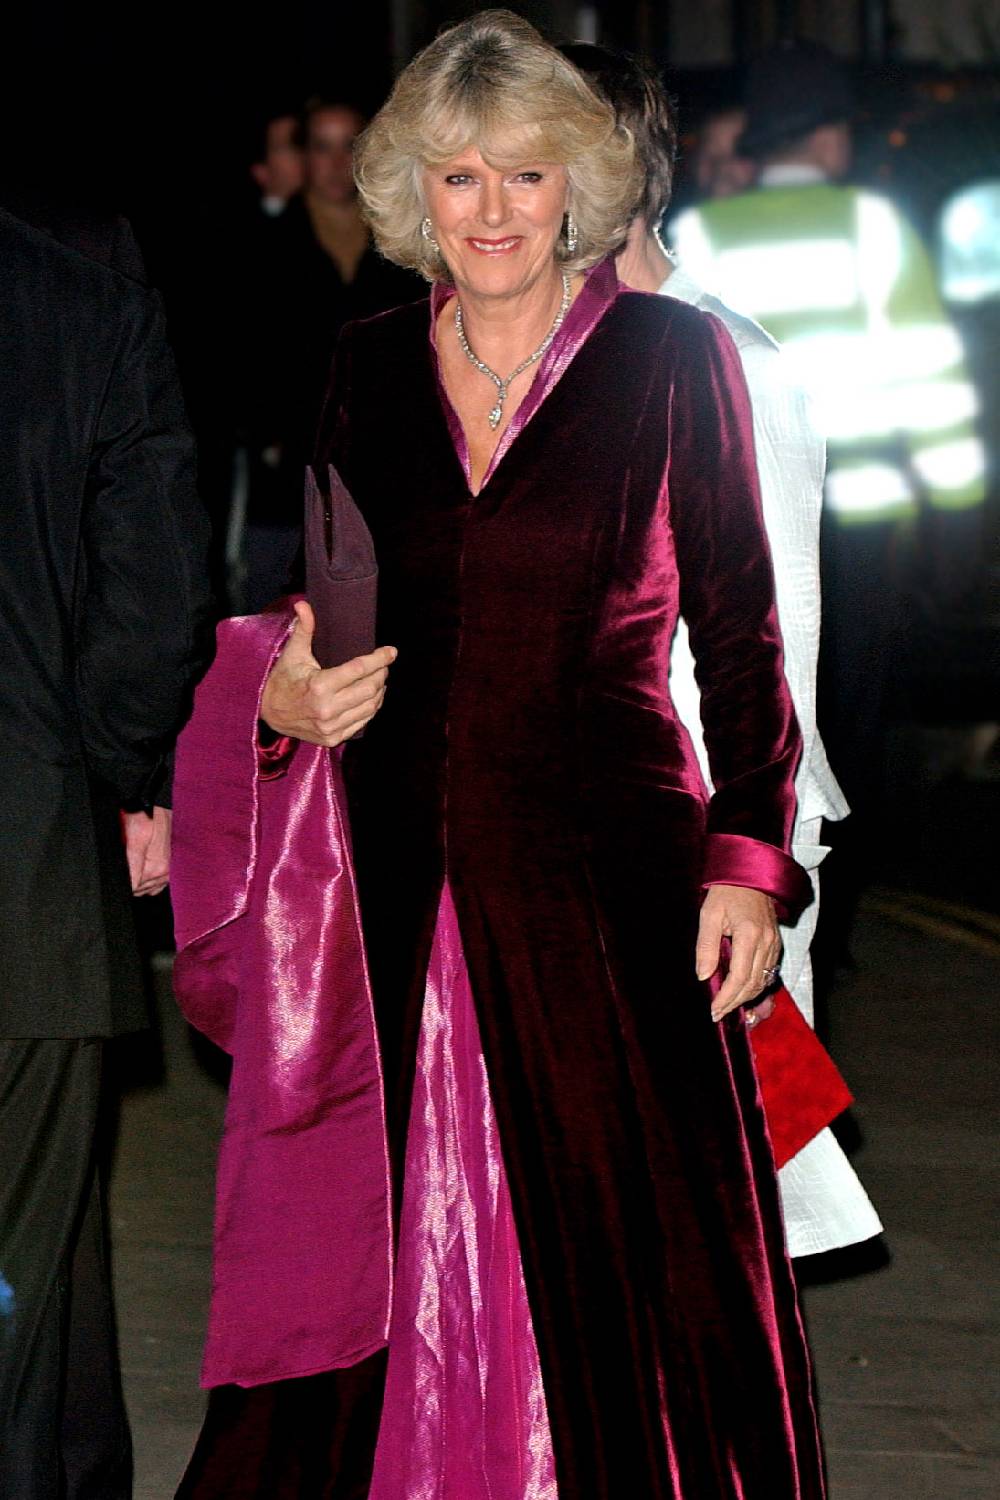 Camilla at the opera in 2004